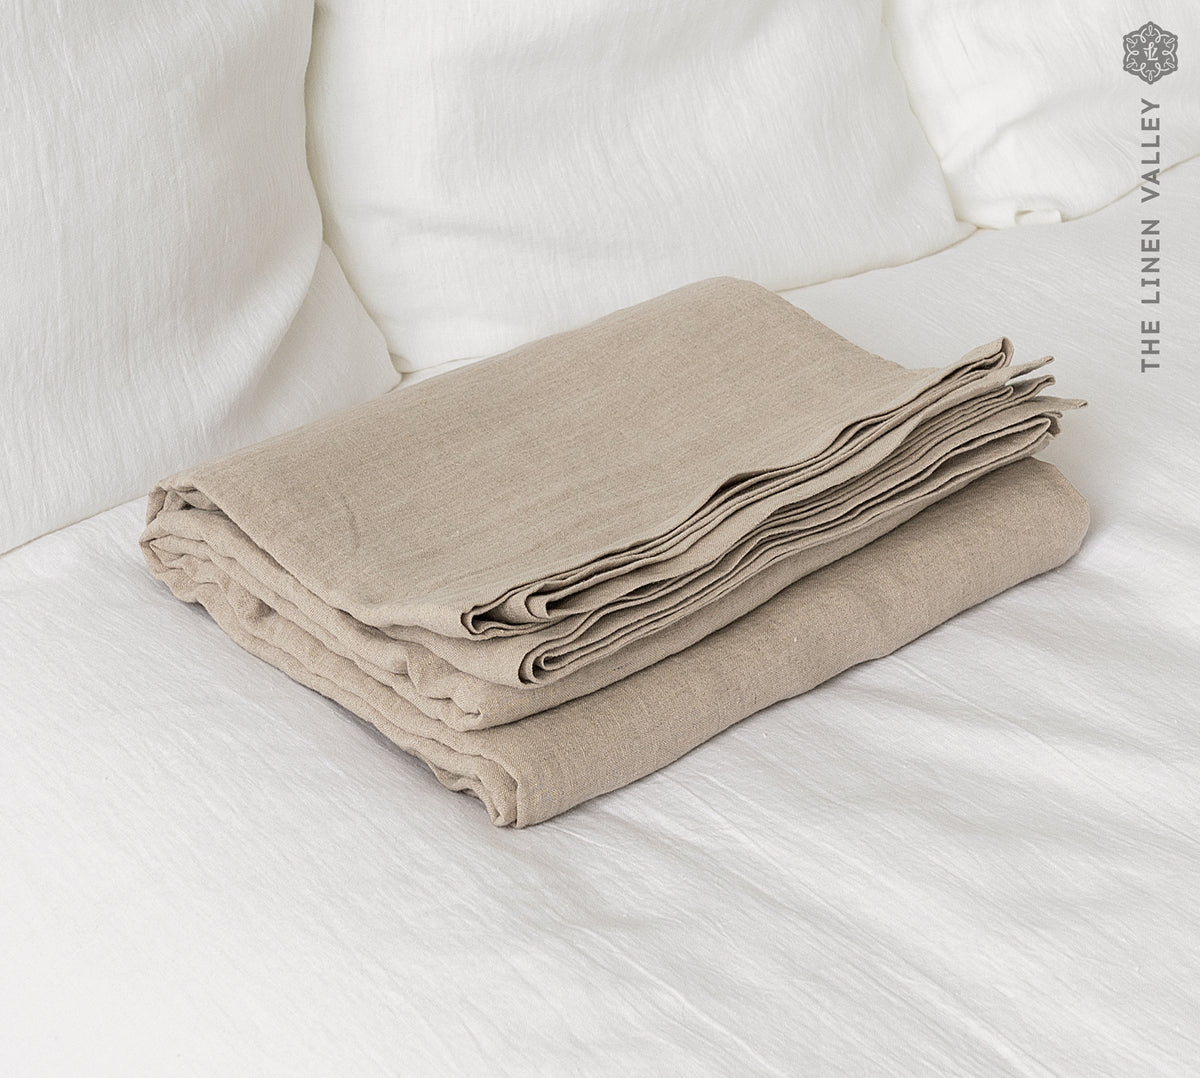 Natural linen flat sheet